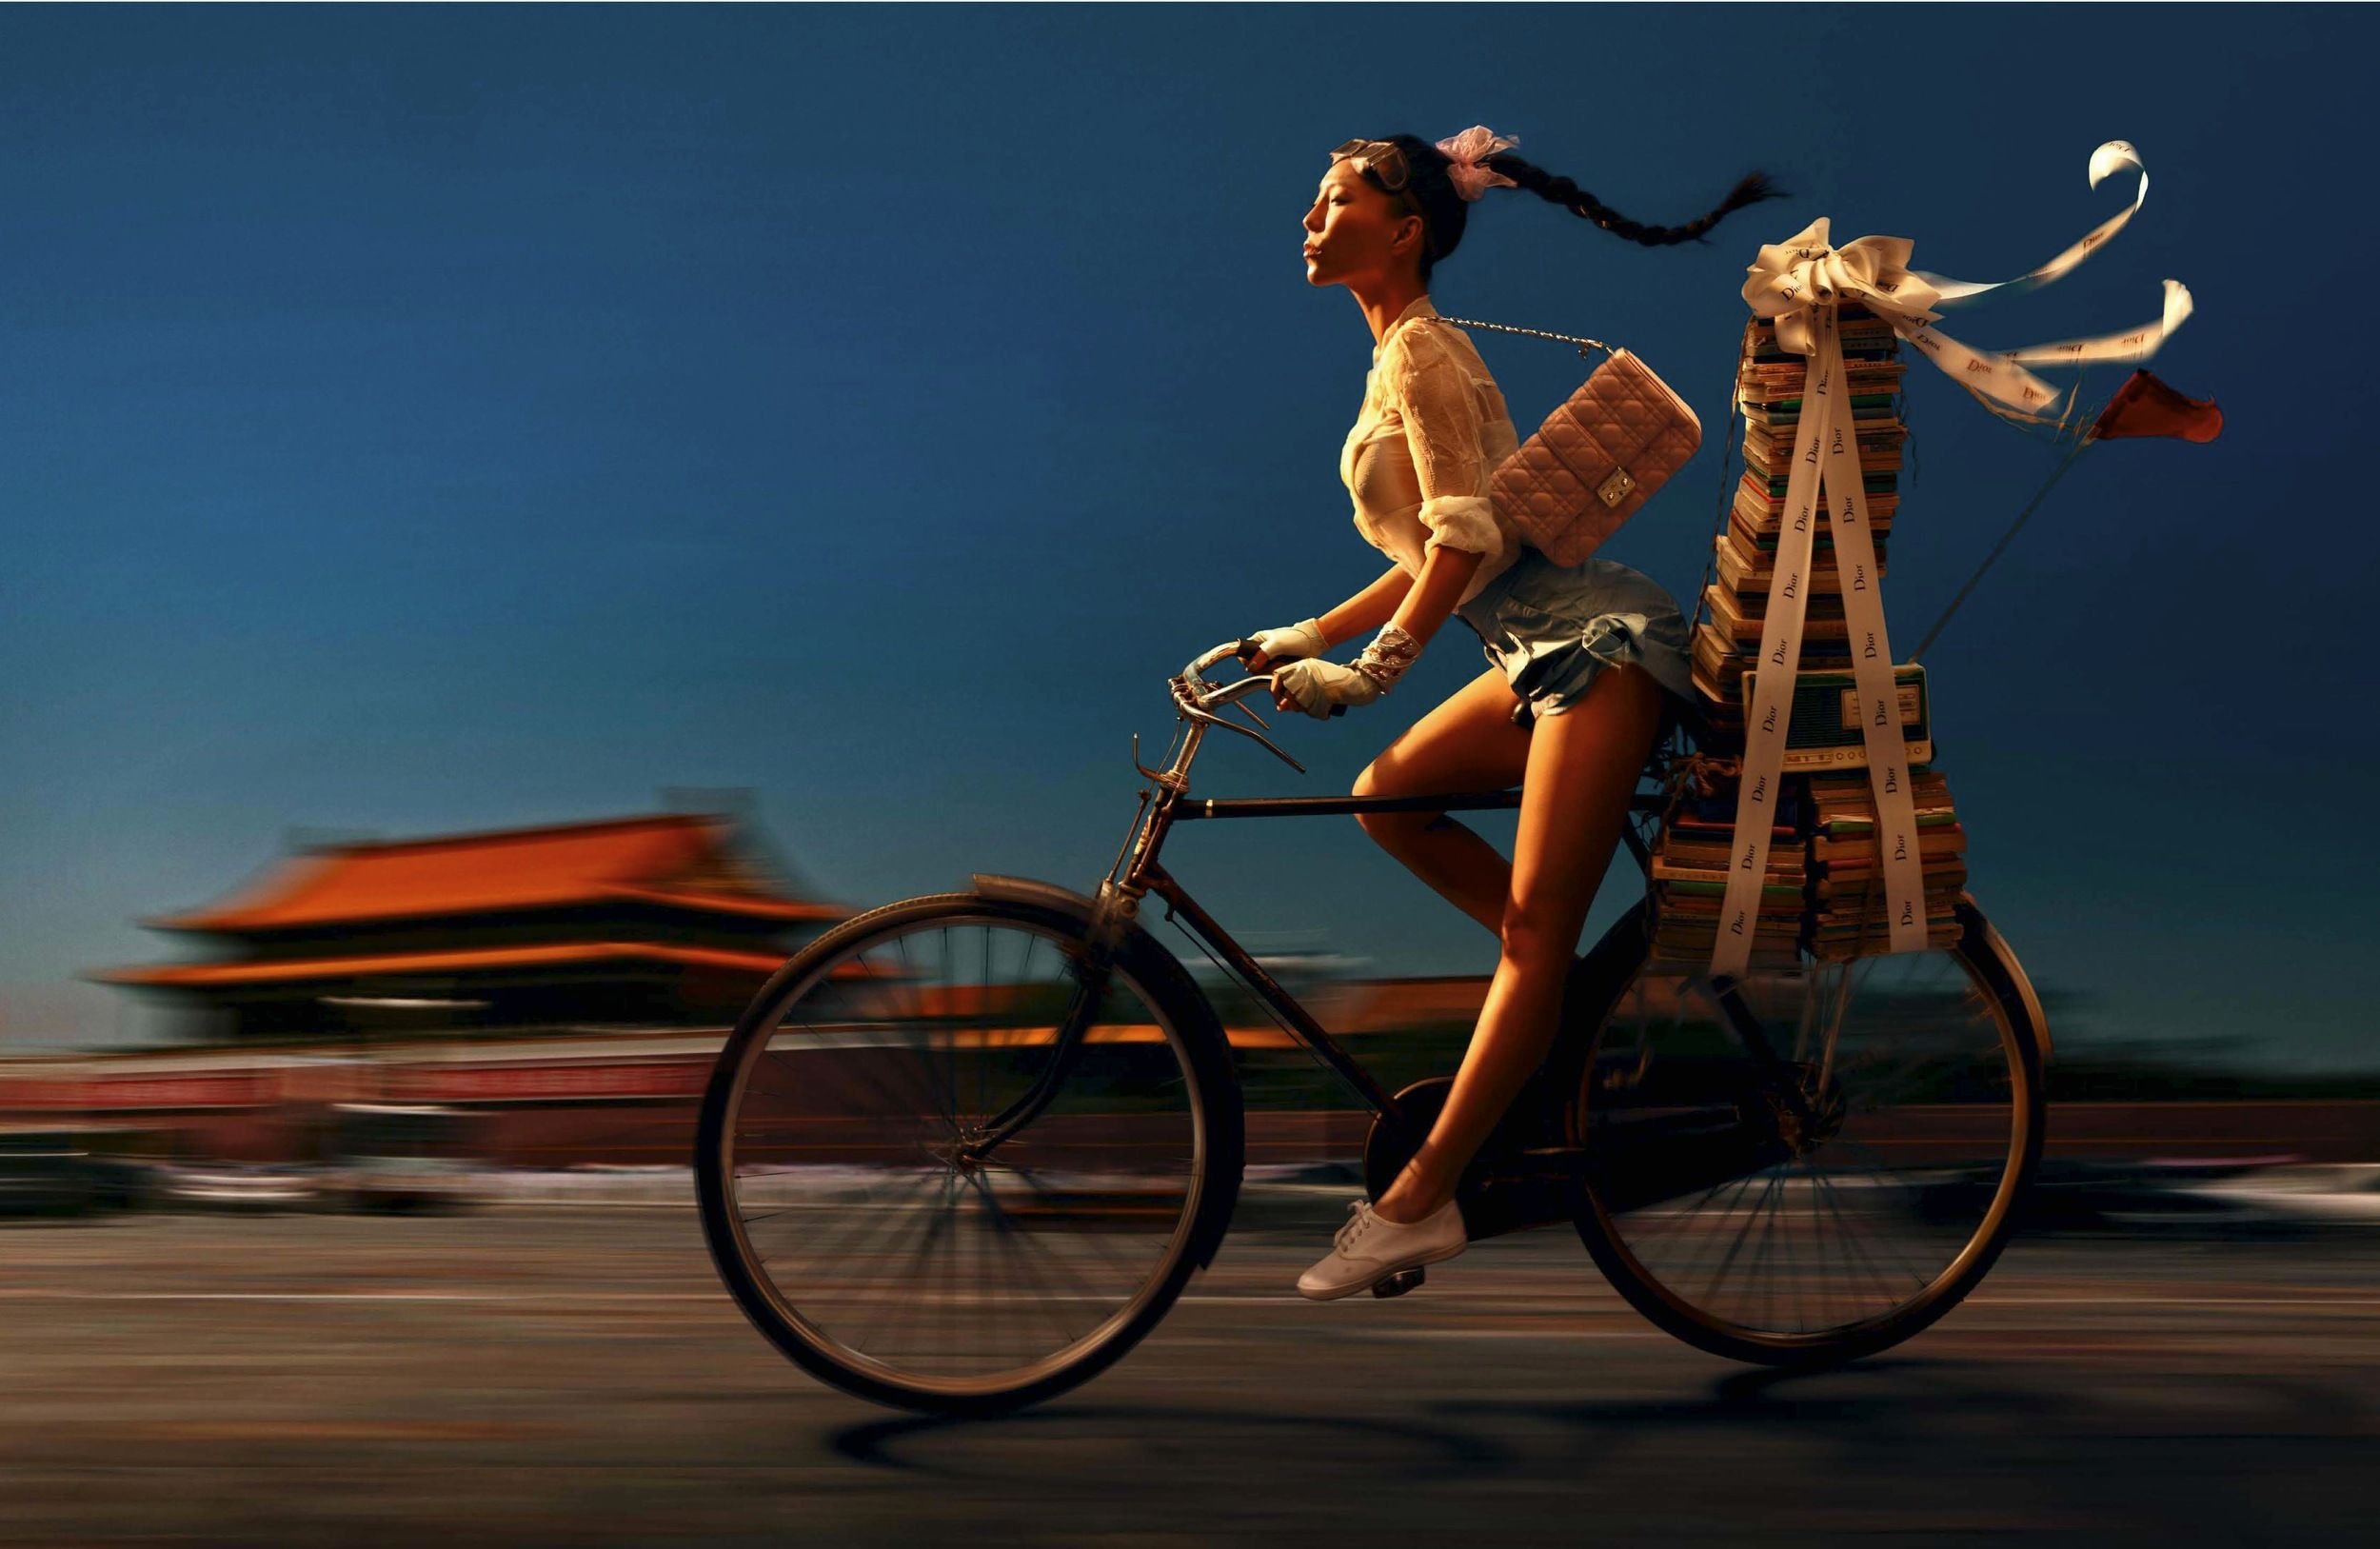 Фотографии с великом. Чэнь Мань фотограф Dior. Женщина на велосипеде. Креативный велосипед. Девушка едет на велосипеде.